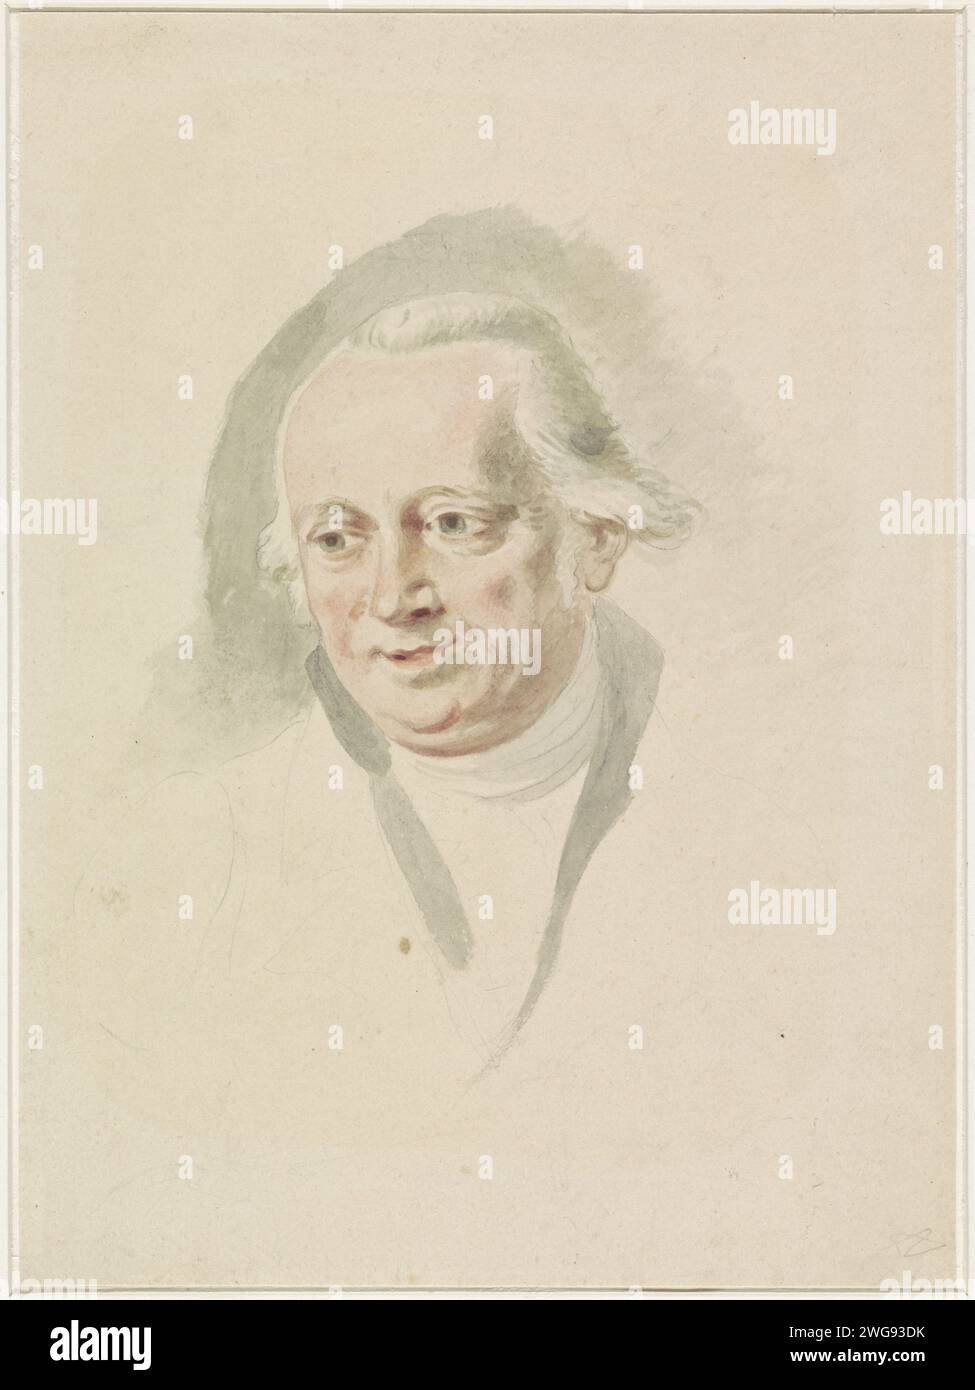 Portrait d'Adriaan de Lelie, Anonyme, 1765 - 1820 papier à dessin. crayon. portrait au pinceau aquarelle (peinture), autoportrait de l'artiste. portrait, autoportrait de peintre. personnages historiques Banque D'Images